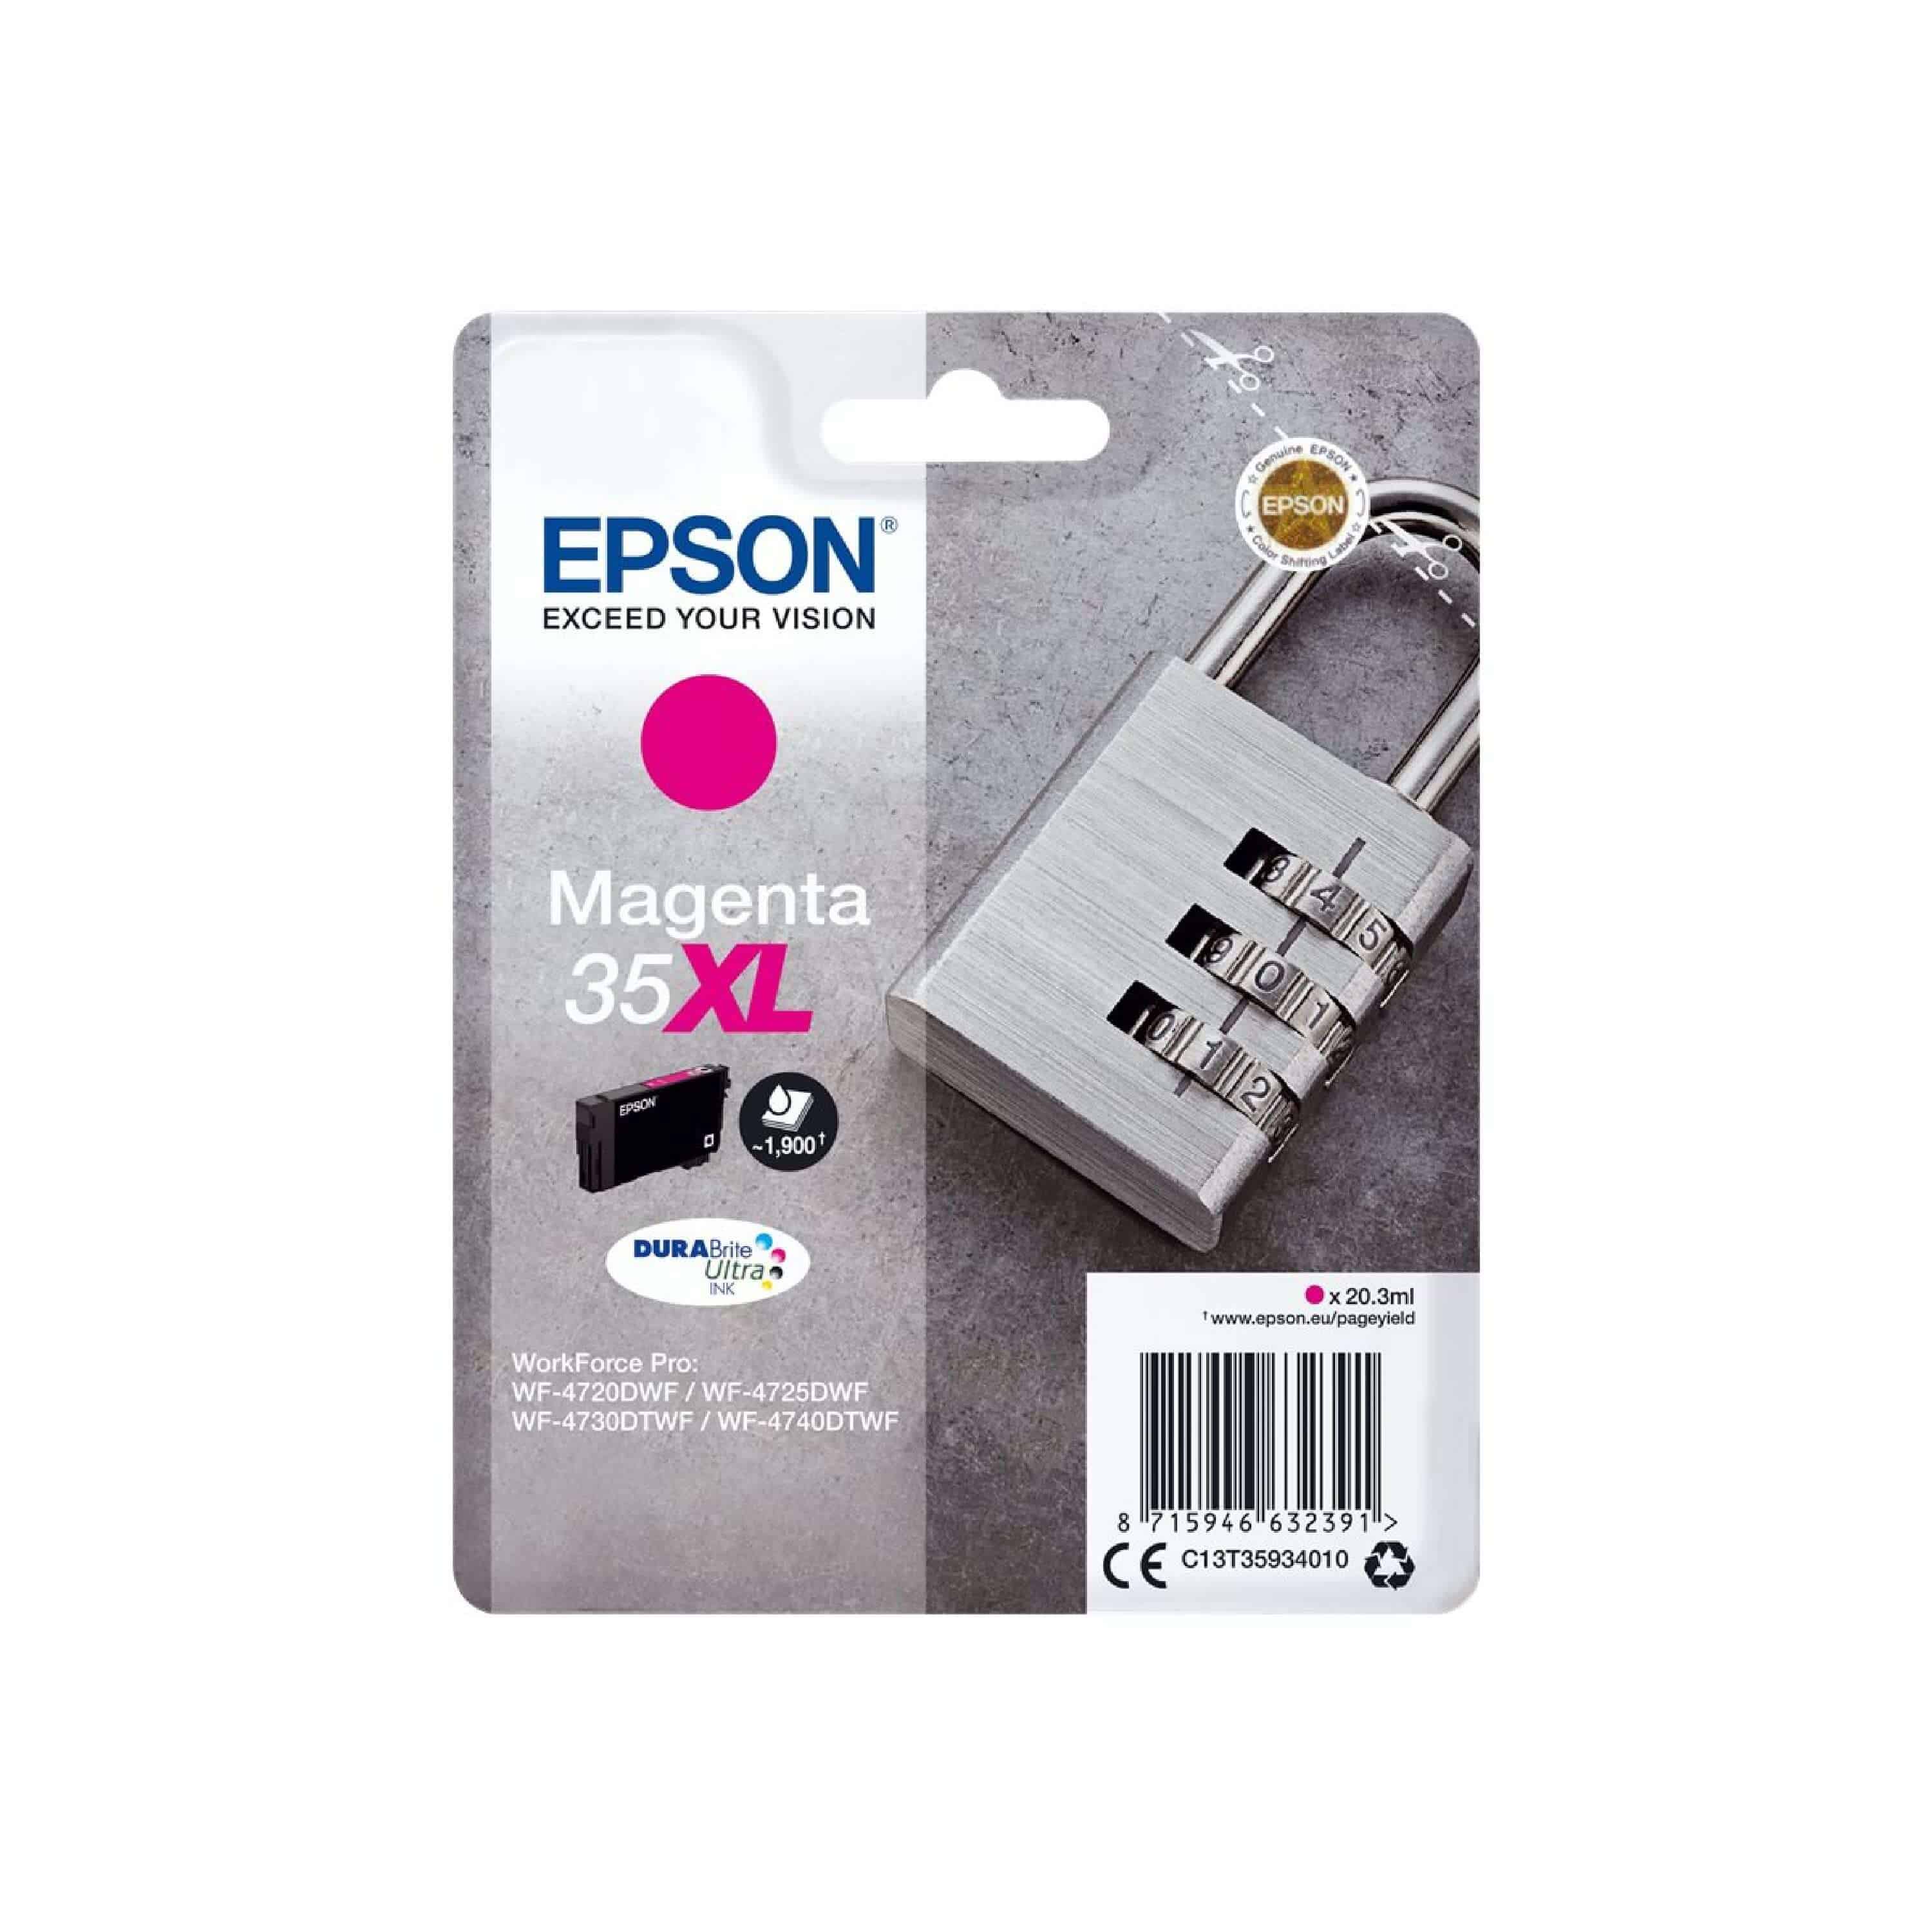 Original Druckerpatrone Epson C13T35934010 / 35XL